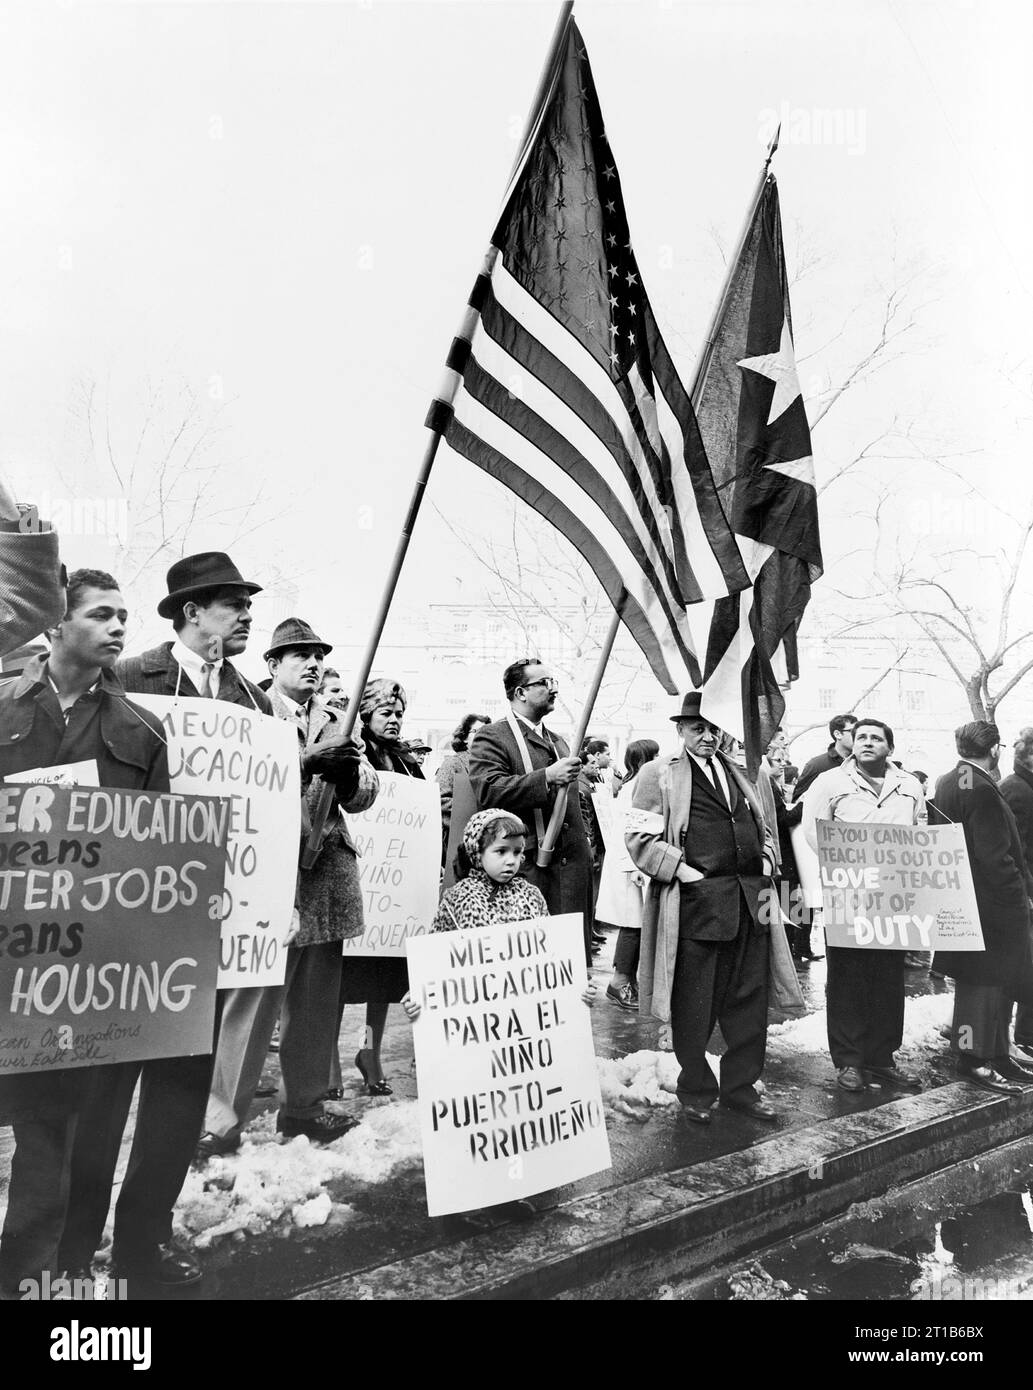 Gruppo di portoricani che manifestano per i diritti civili presso il Municipio di New York, New York, USA, al Ravenna, New York World-Telegram e The Sun Newspaper Photography Collection, 1967 Foto Stock